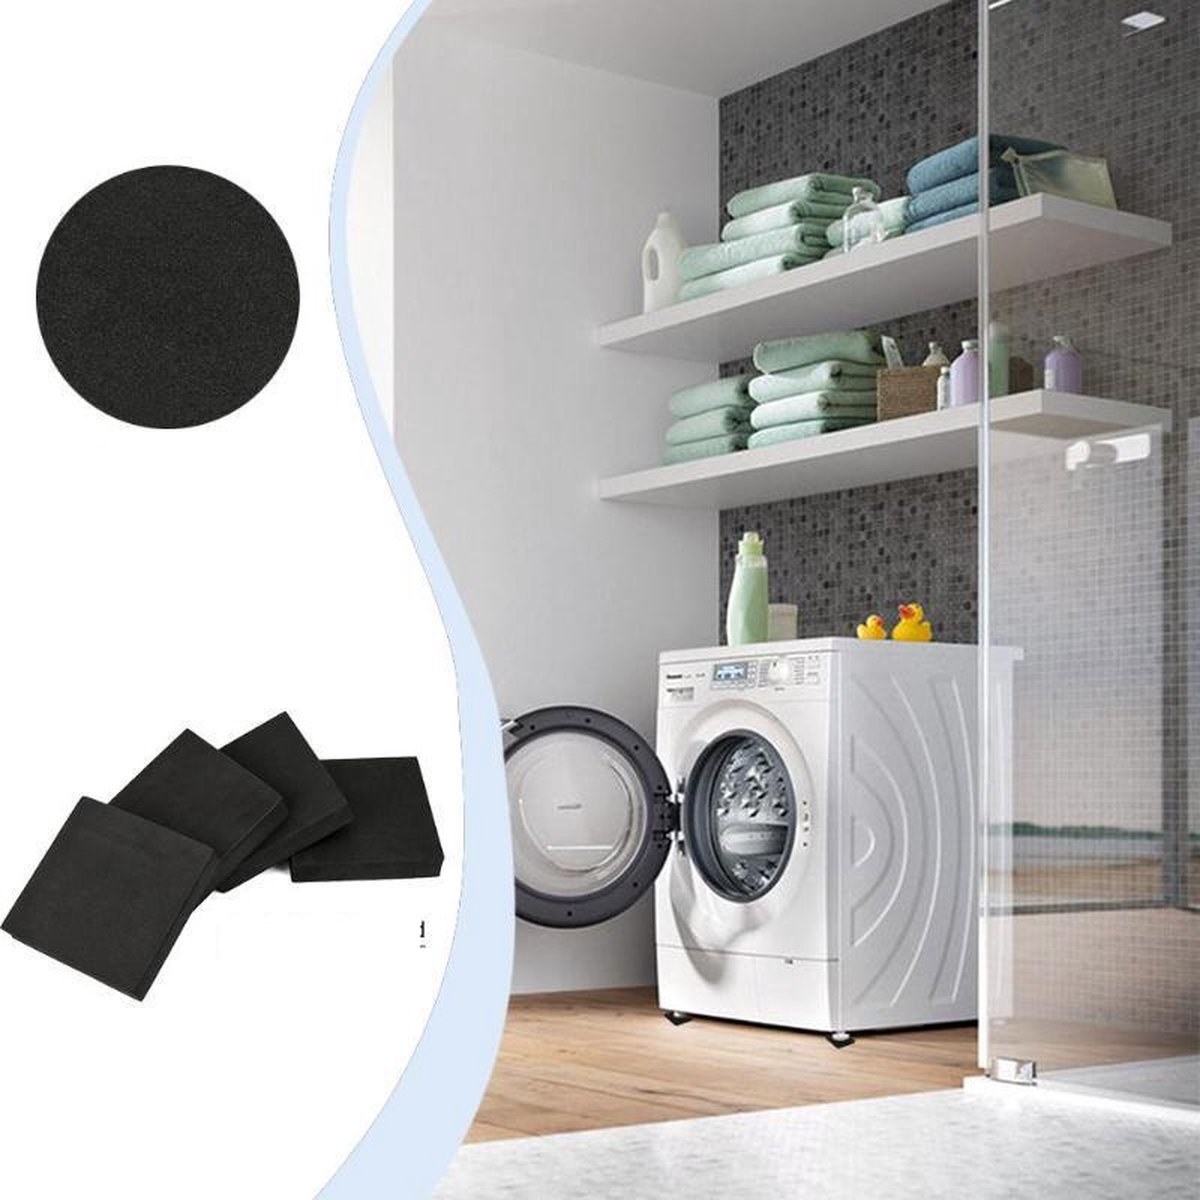 Anti Vibration Caoutchouc Amortisseur Pieds Tampons Pour Machines à laver et lave-vaisselle utile 